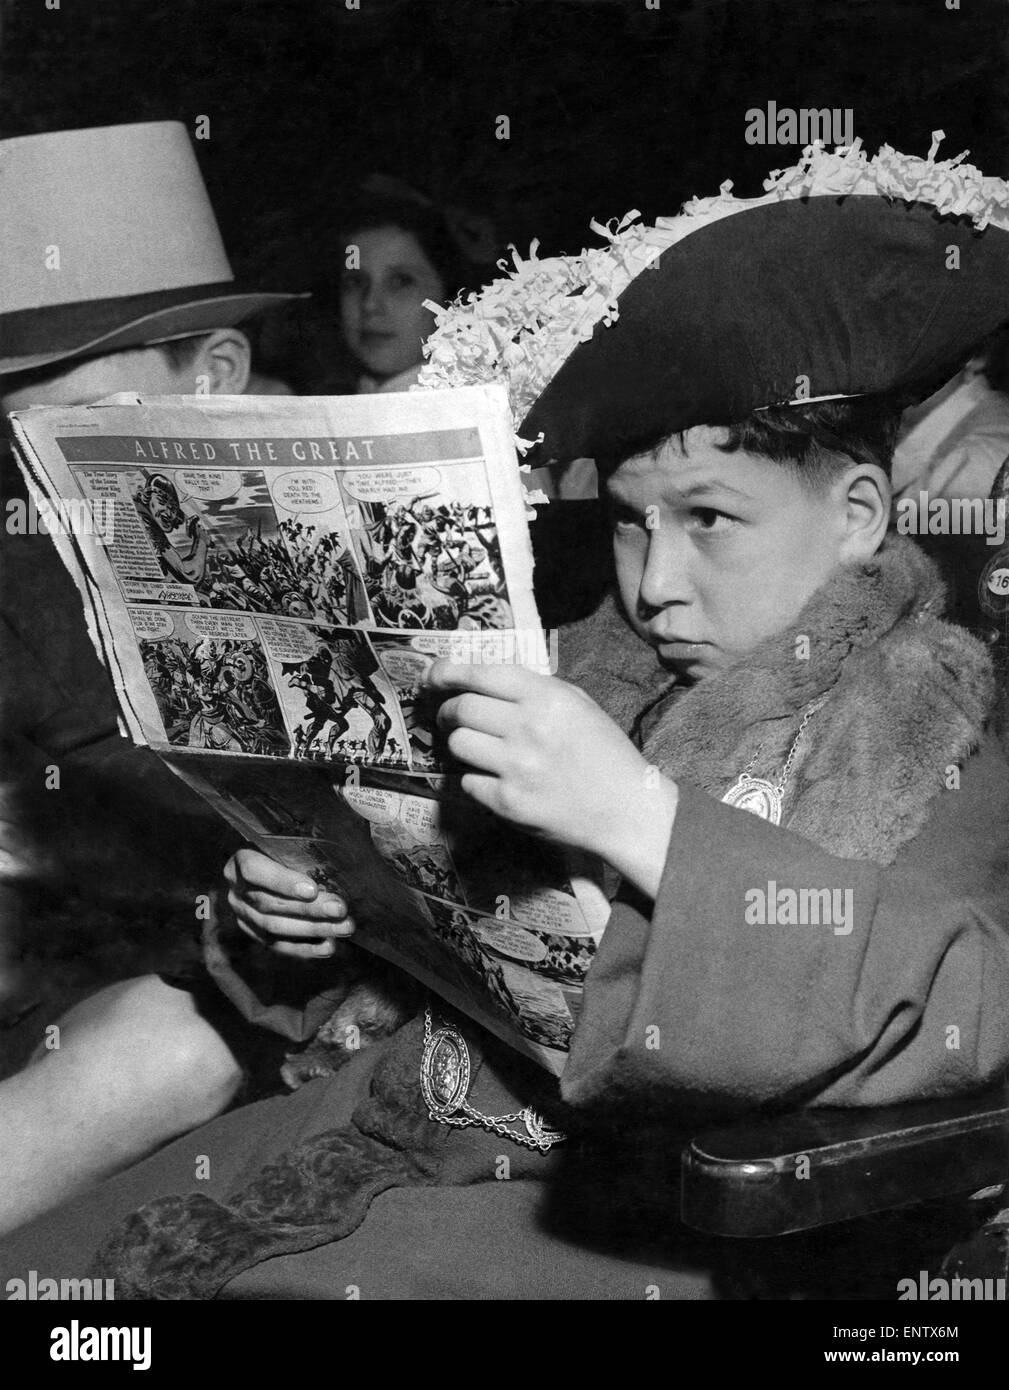 Il giovane John Hoffman da Thornhill primario è il sindaco Hamelin ma egli stills legge il suo fumetto di Alfredo il Grande mentre in attesa di prove. Il 24 marzo 1954. Foto Stock